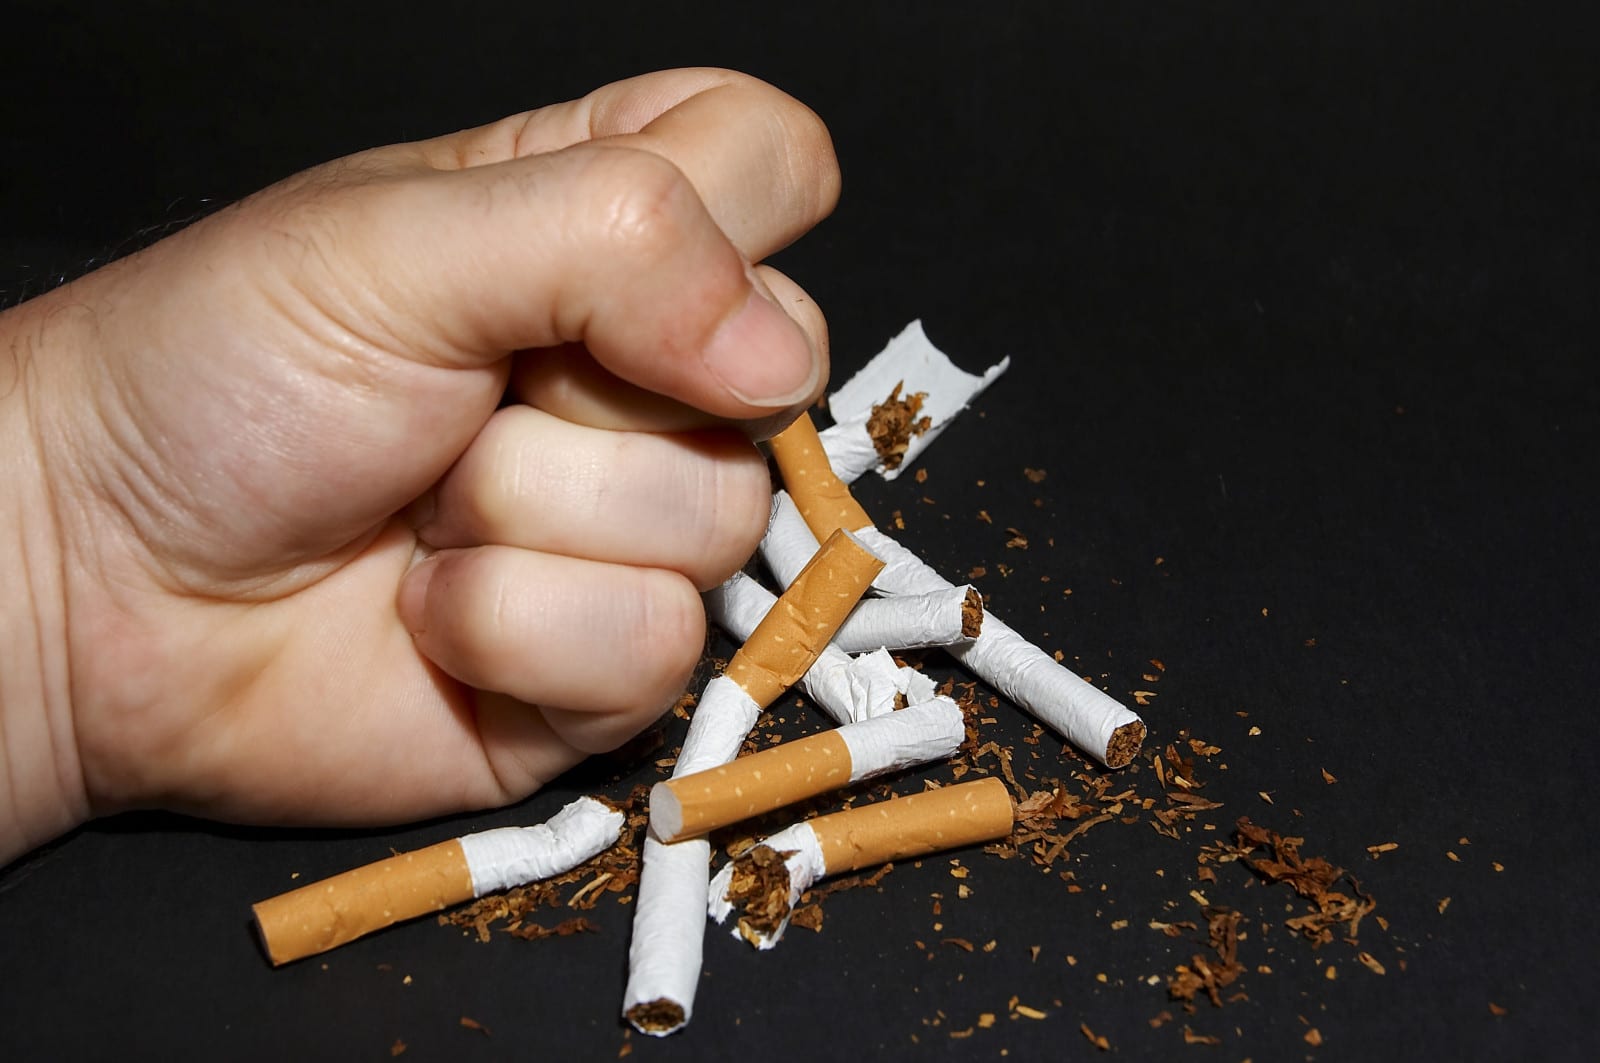 "Европейская" цена на табак: сколько будет стоить пачка сигарет в Днепре в 2019 году. Новости Днепра